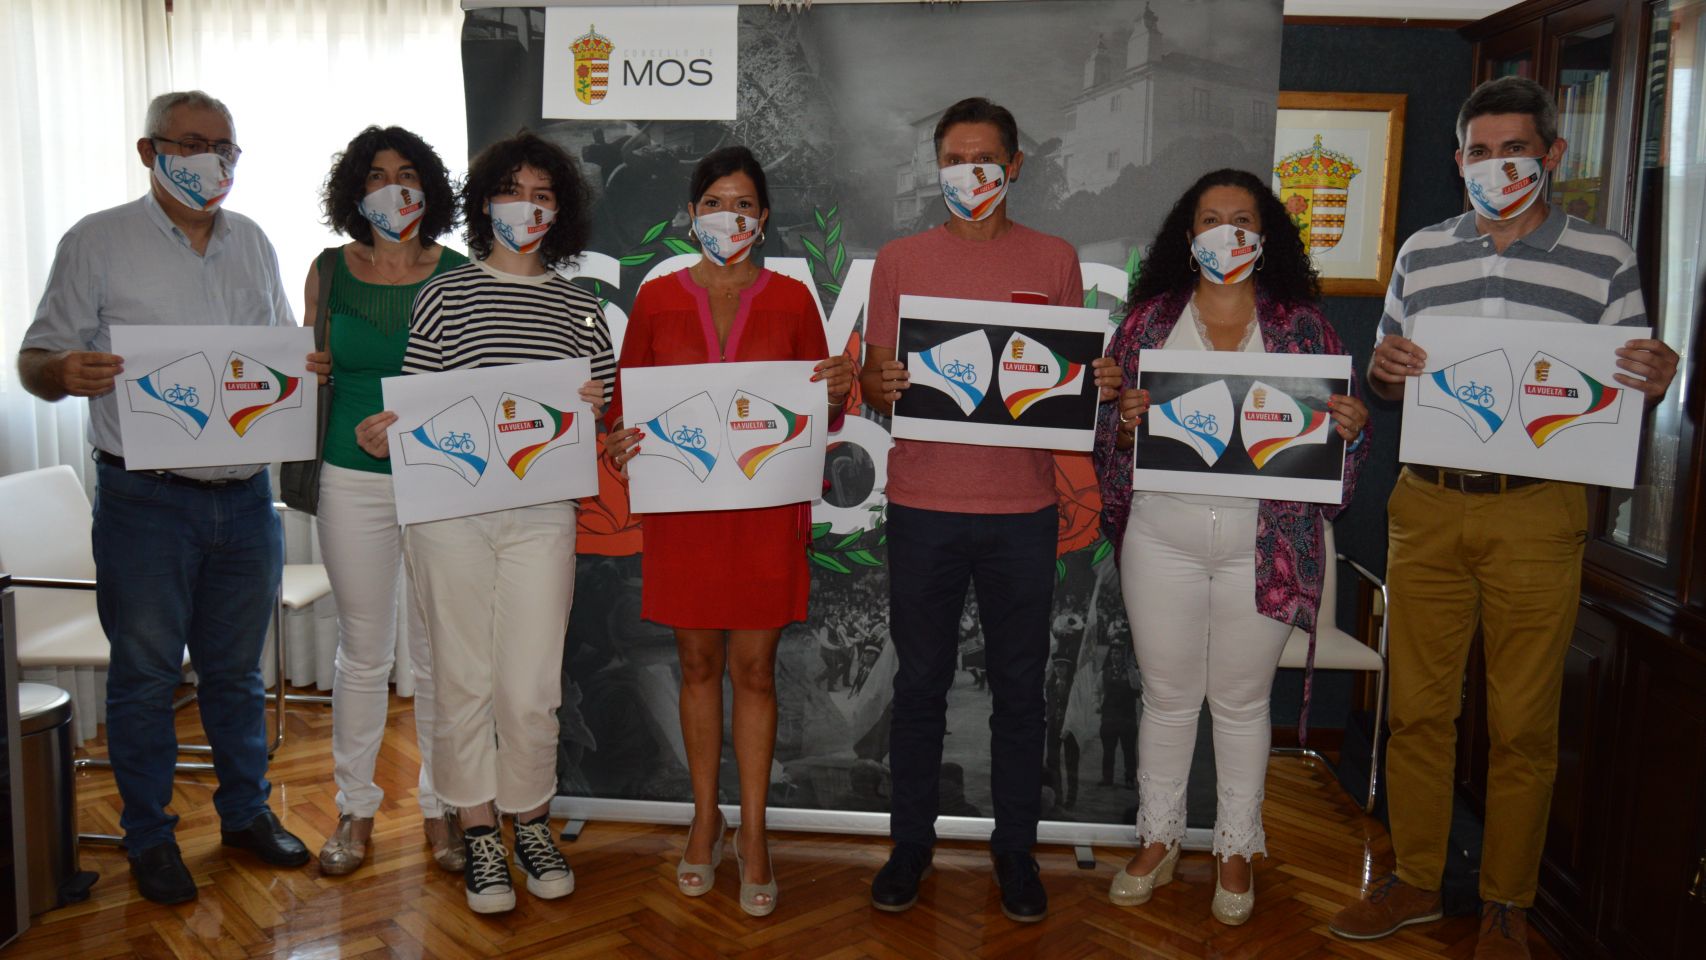 Presentación de la mascarilla oficial de La Vuelta en Mos (Pontevedra)